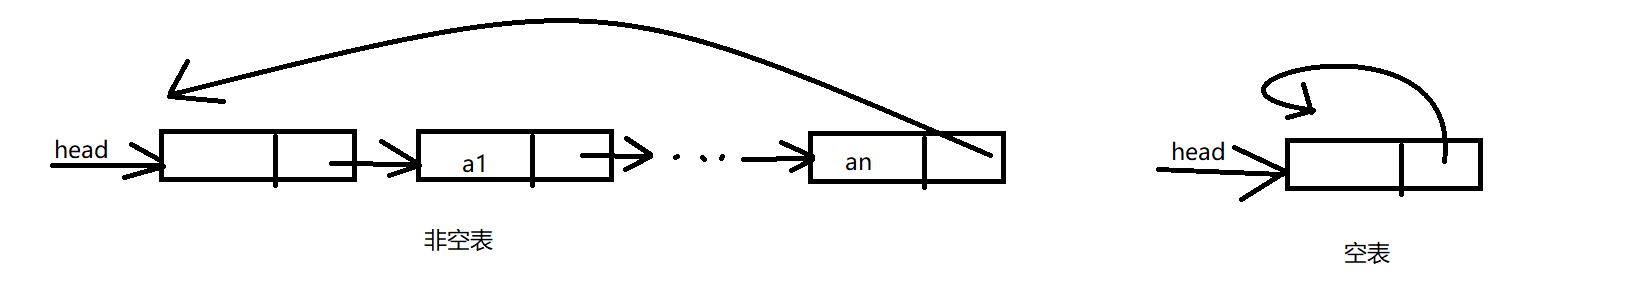 小甲鱼笔记：数据结构——线性表（四）循环链表和双向链表，约瑟夫问题，魔术师发牌问题，判断一个单链表是否有环 - 文章图片